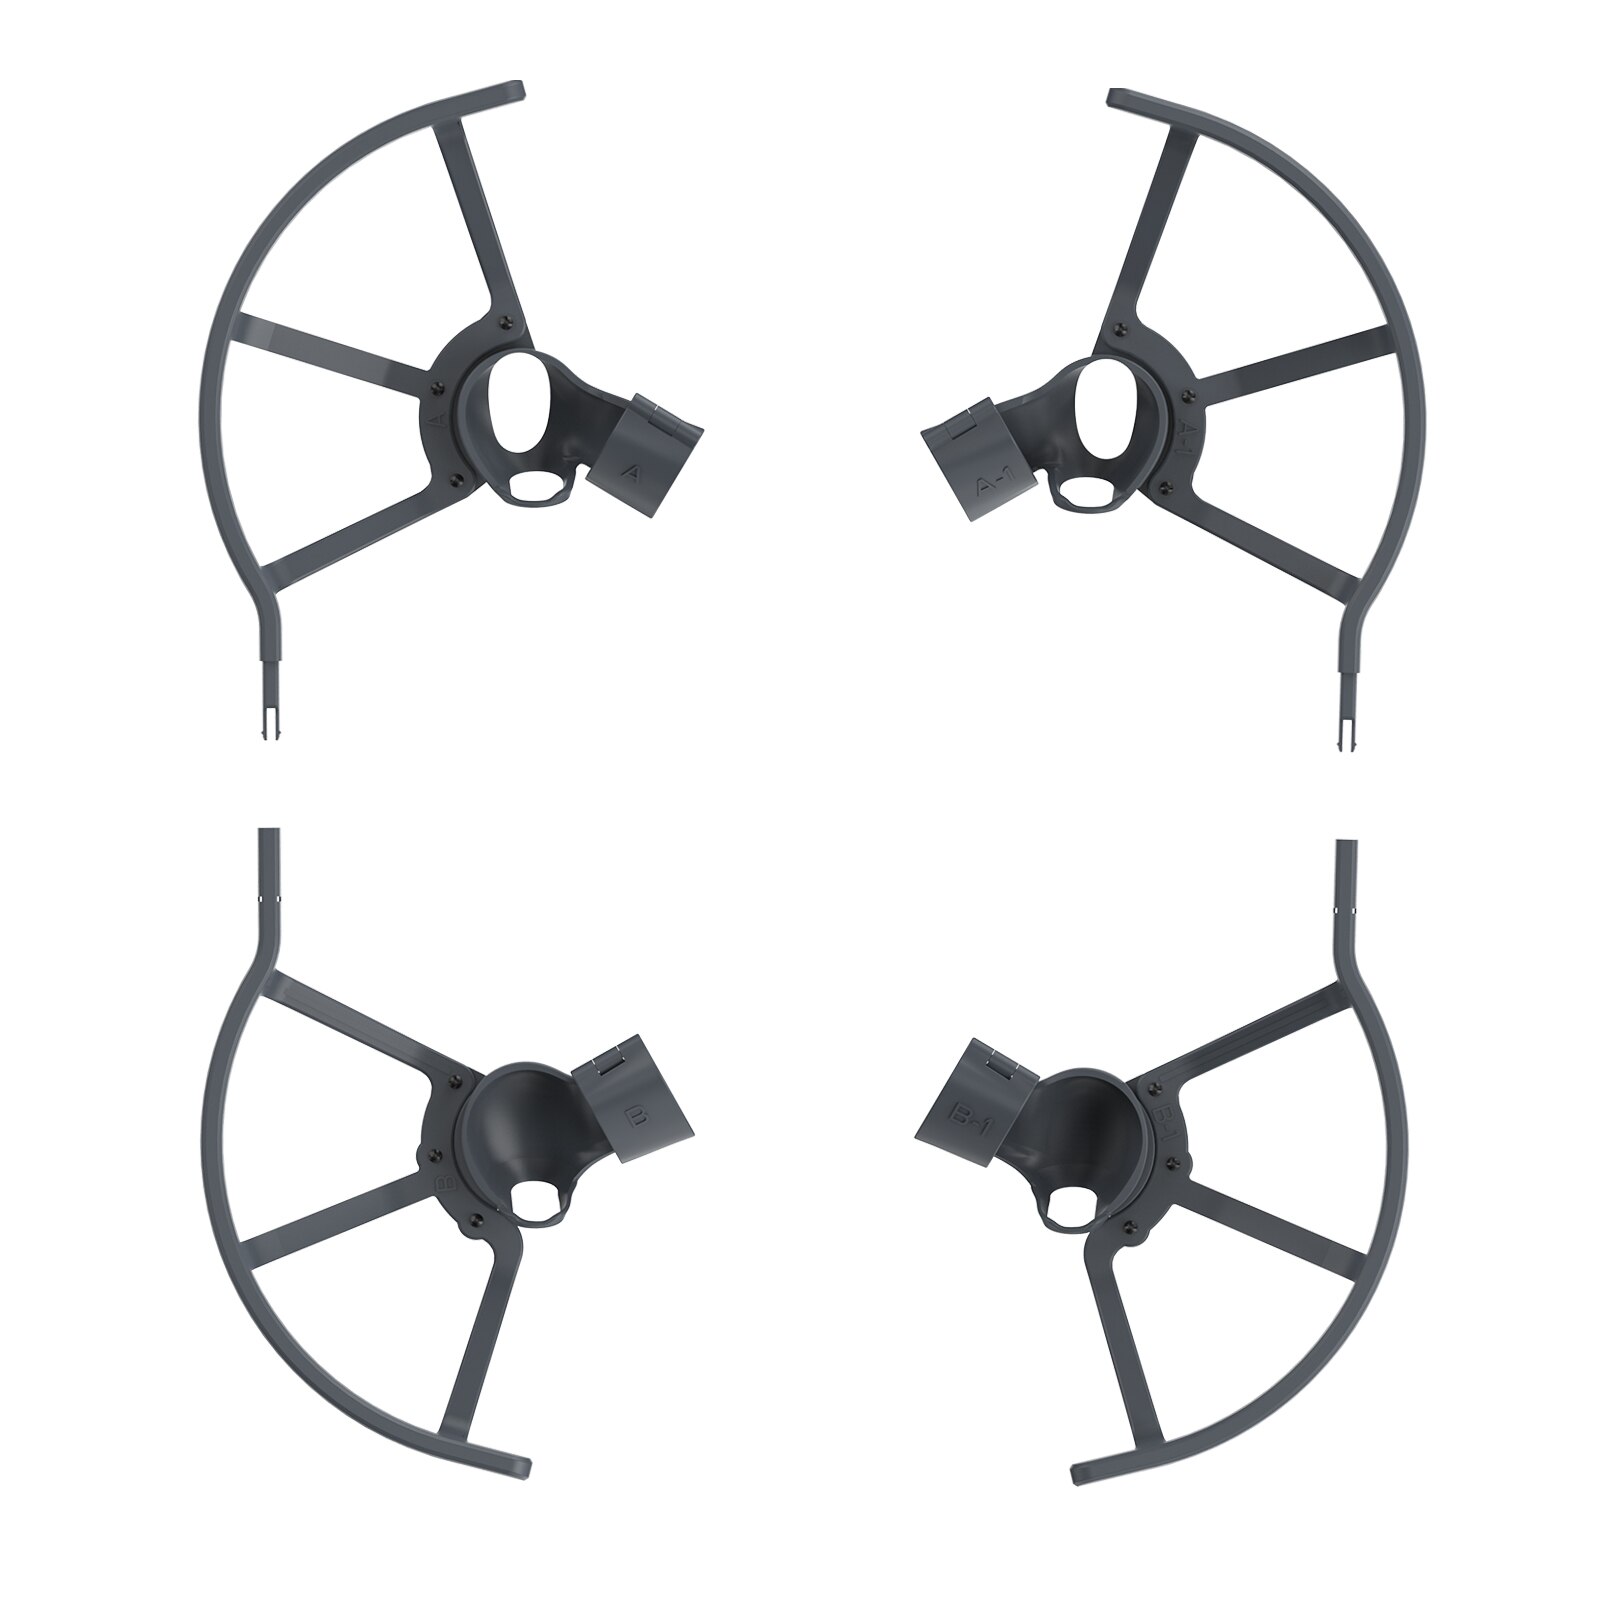 Mavic mini /mini 2 propeller guard prop protection kofanger til dji mavic mini /mini 2 fpv drone blade protector bur tilbehør: Vagt til dji fpv